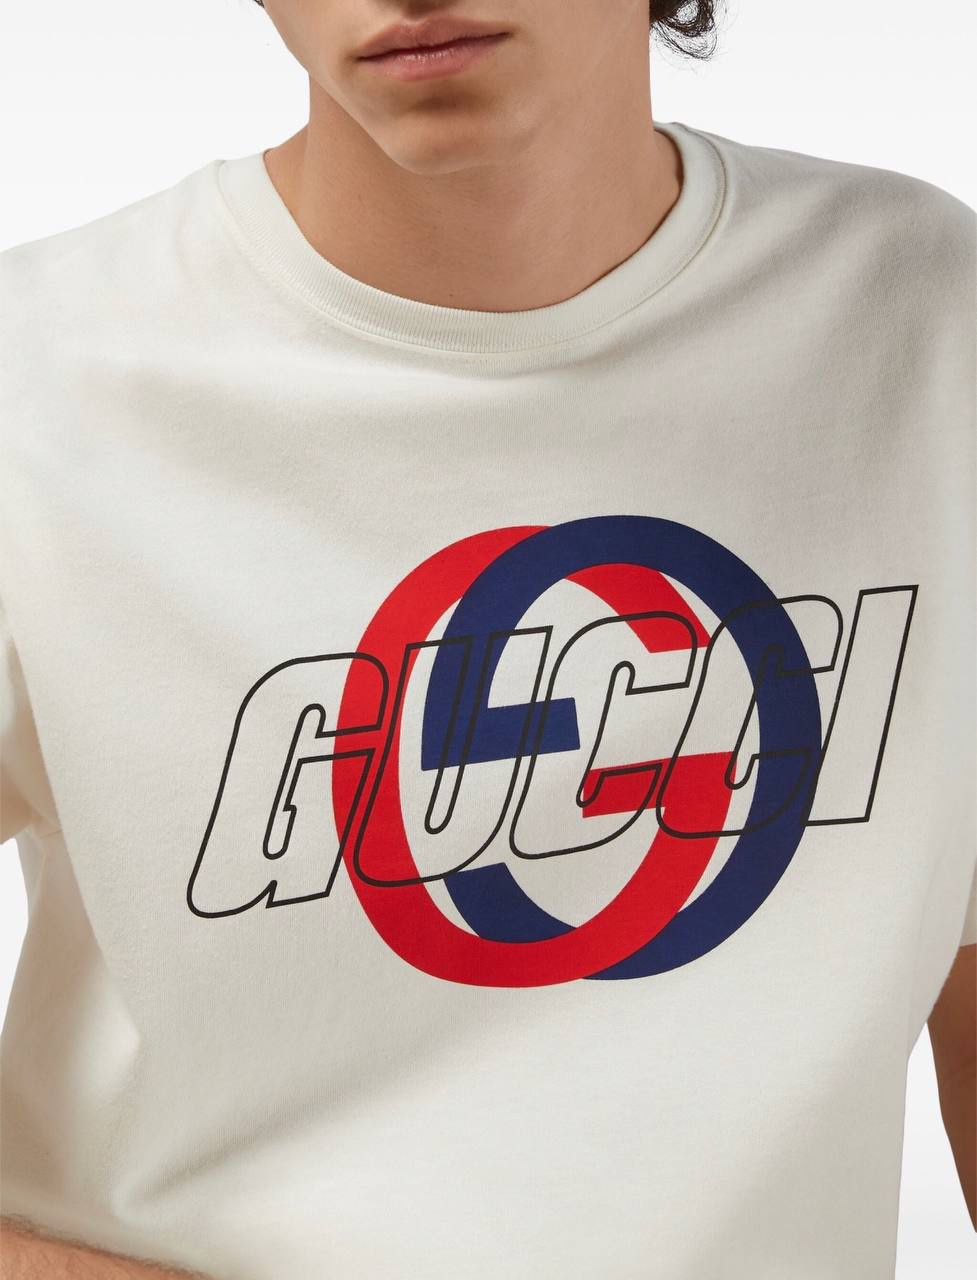 GUCCI Men's Classic T-Shirt 100%Cotton